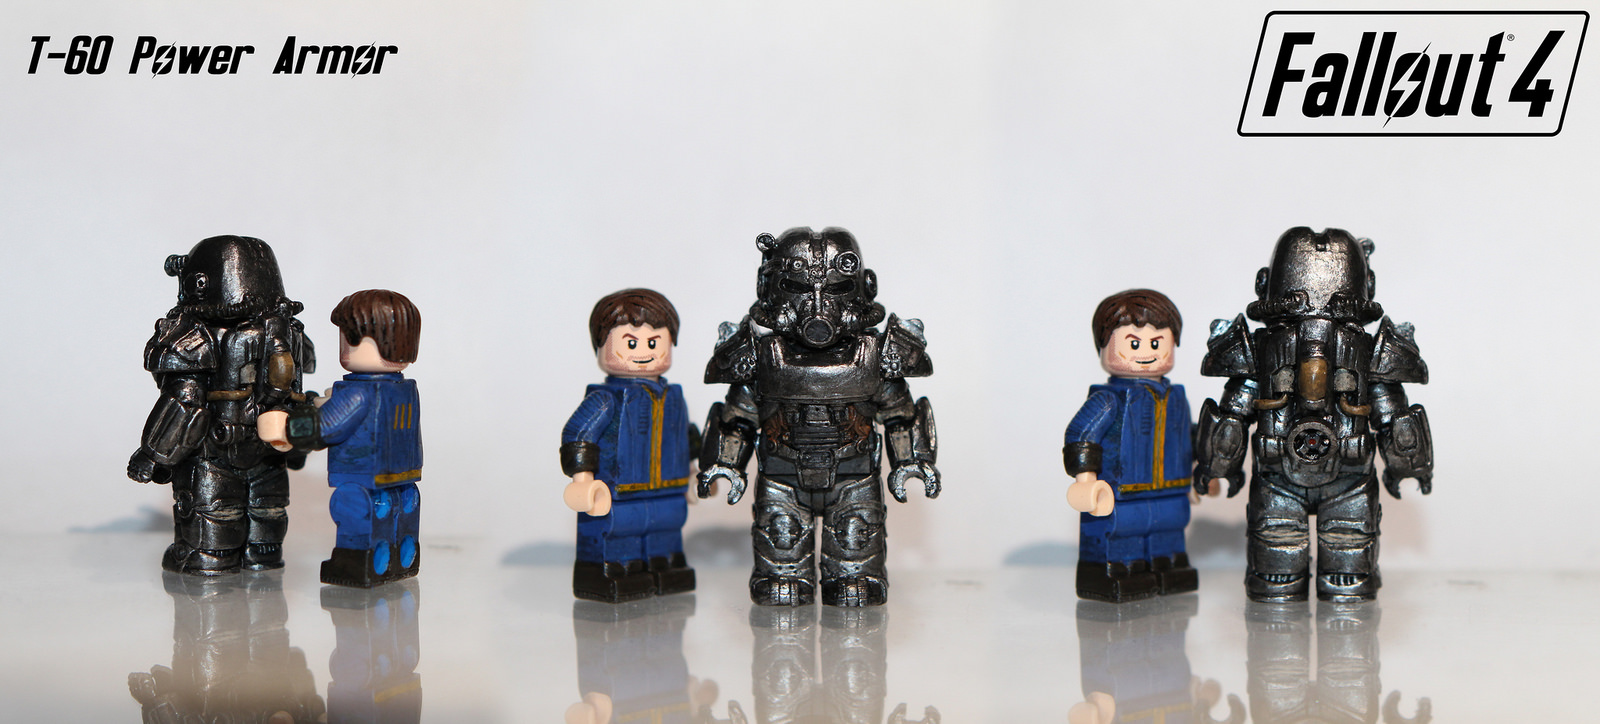 Lego-Fallout-4-T60-Armor